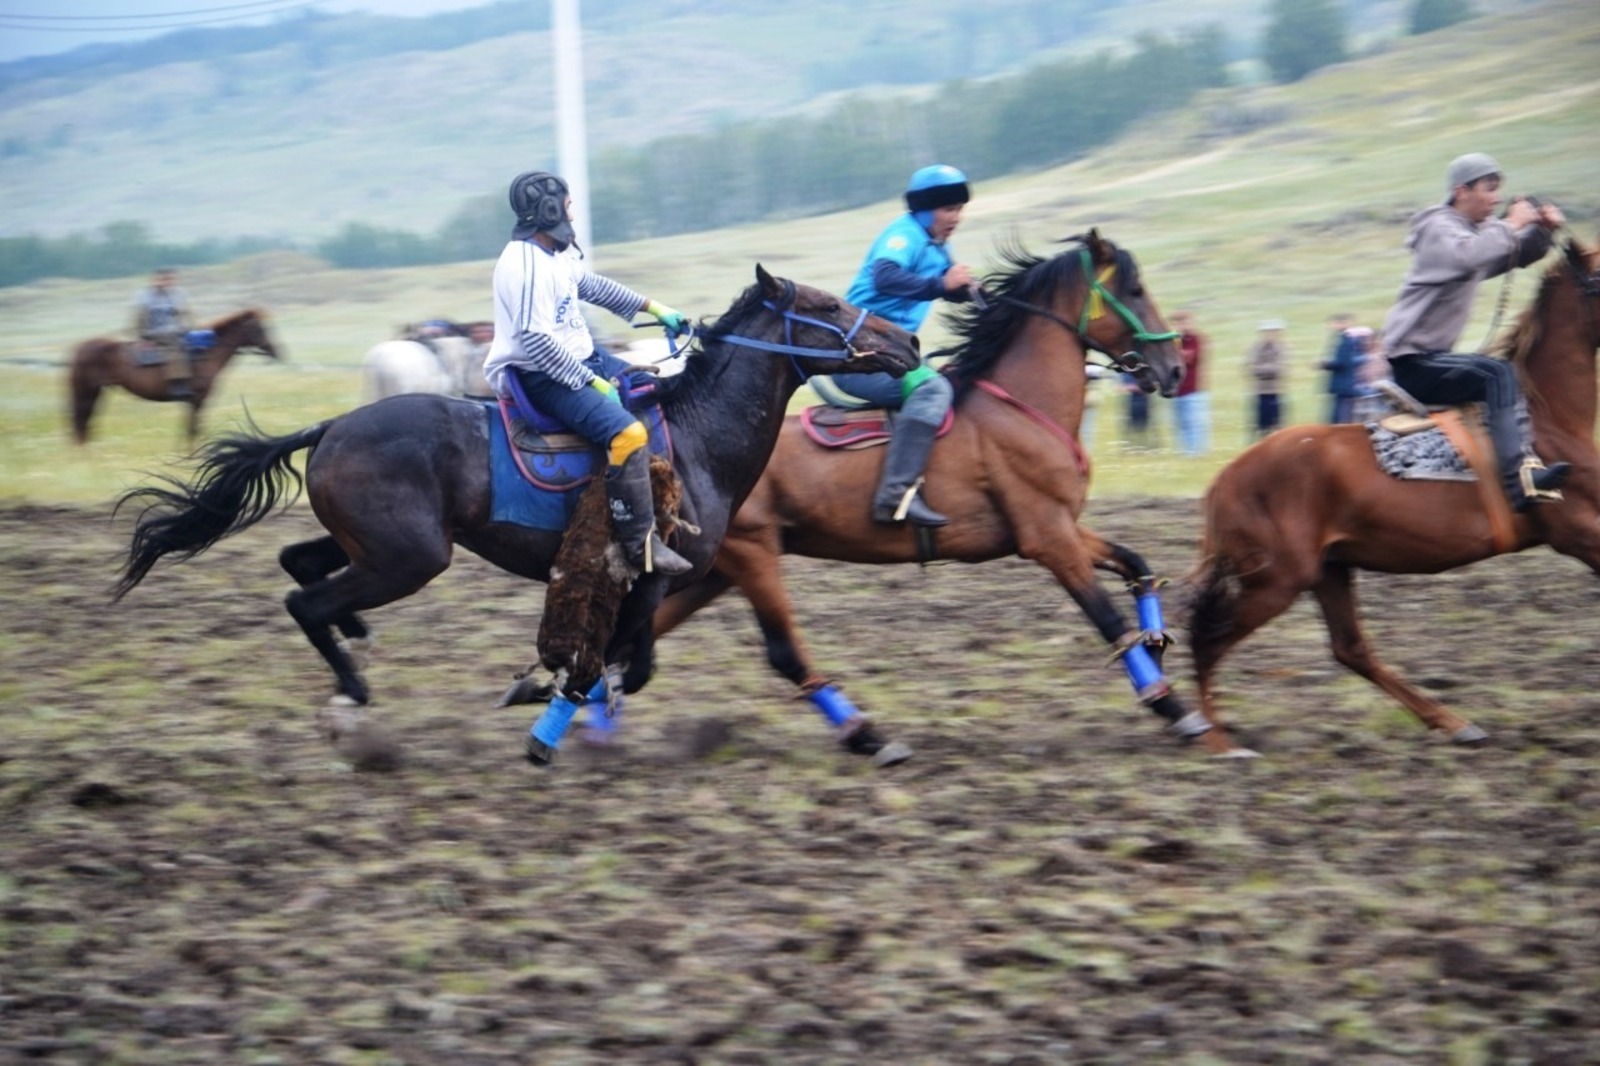 Фестиваль башкирской лошади начался со старинной забавы джигитов